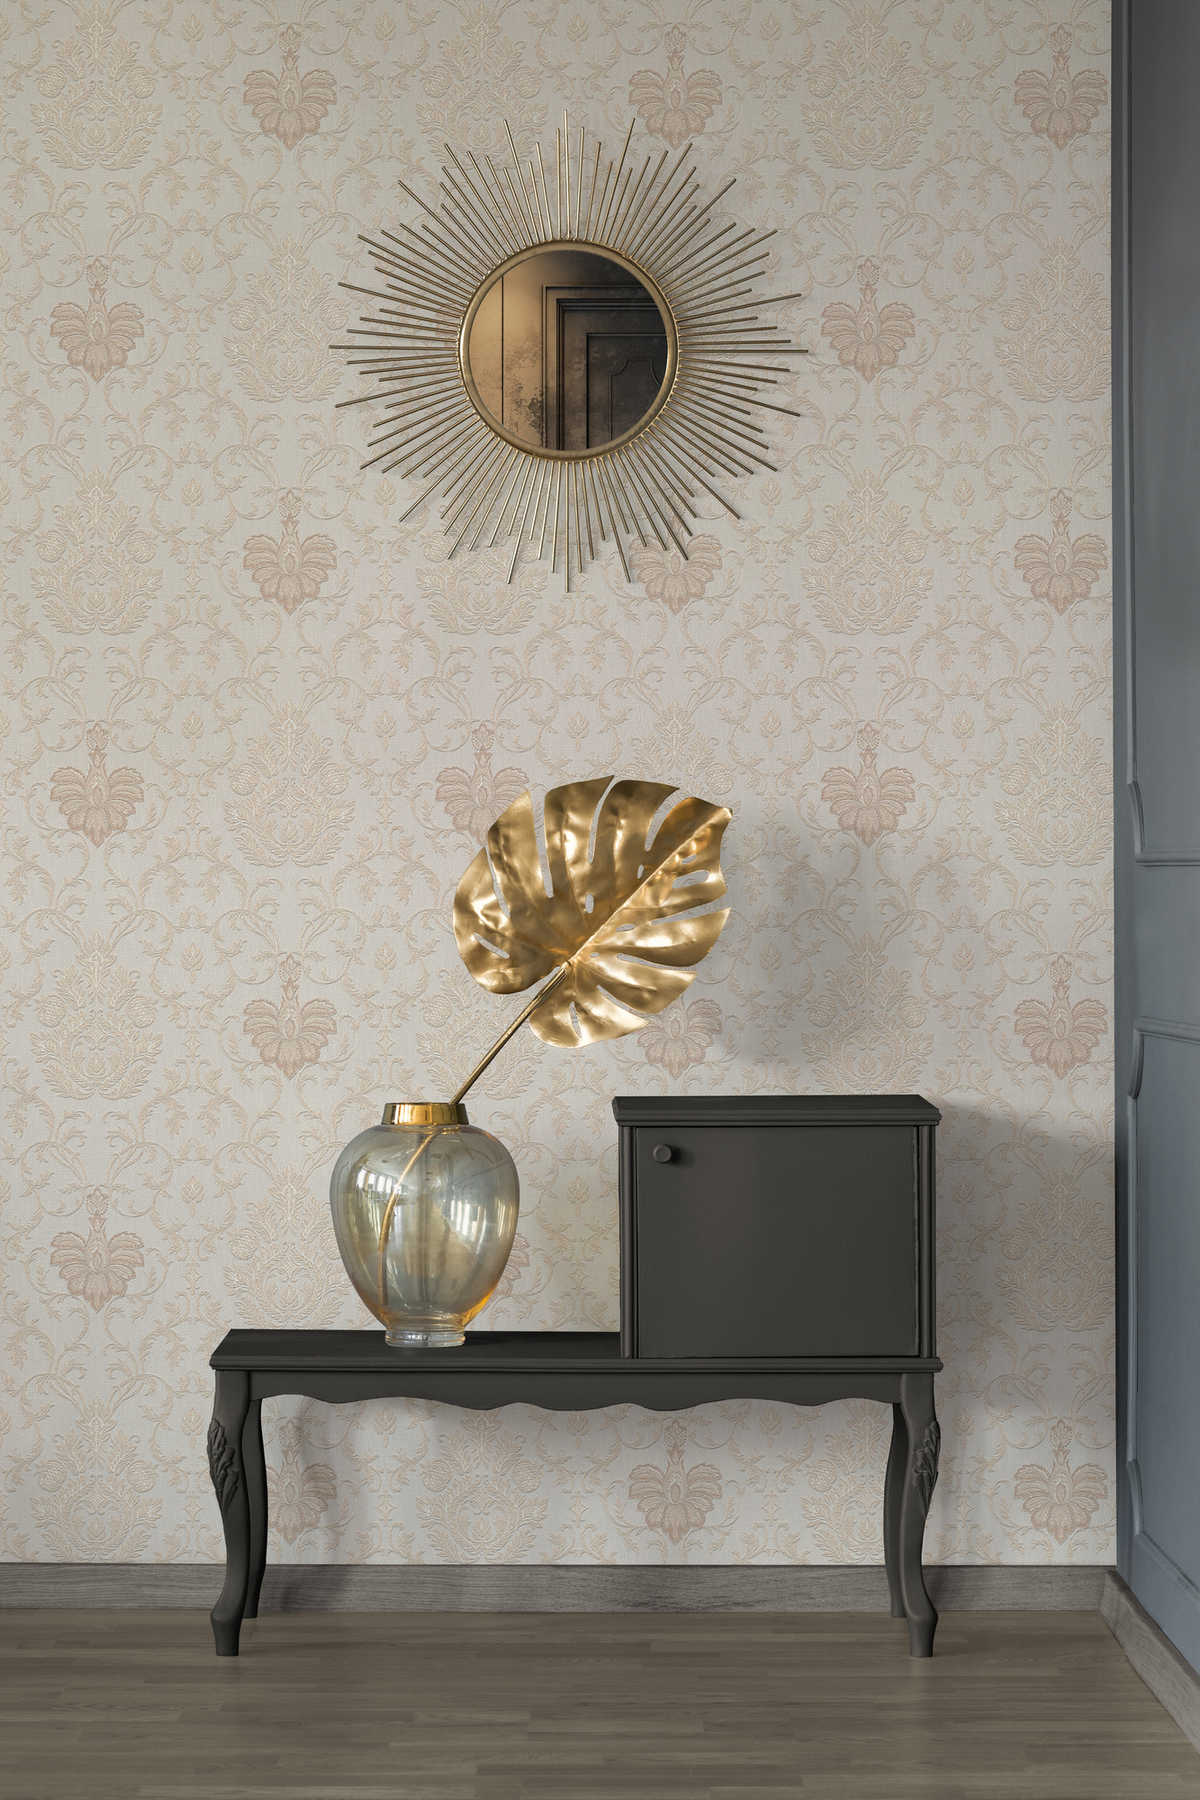             Wallpaper ornamental pattern in colonial style - beige, white
        